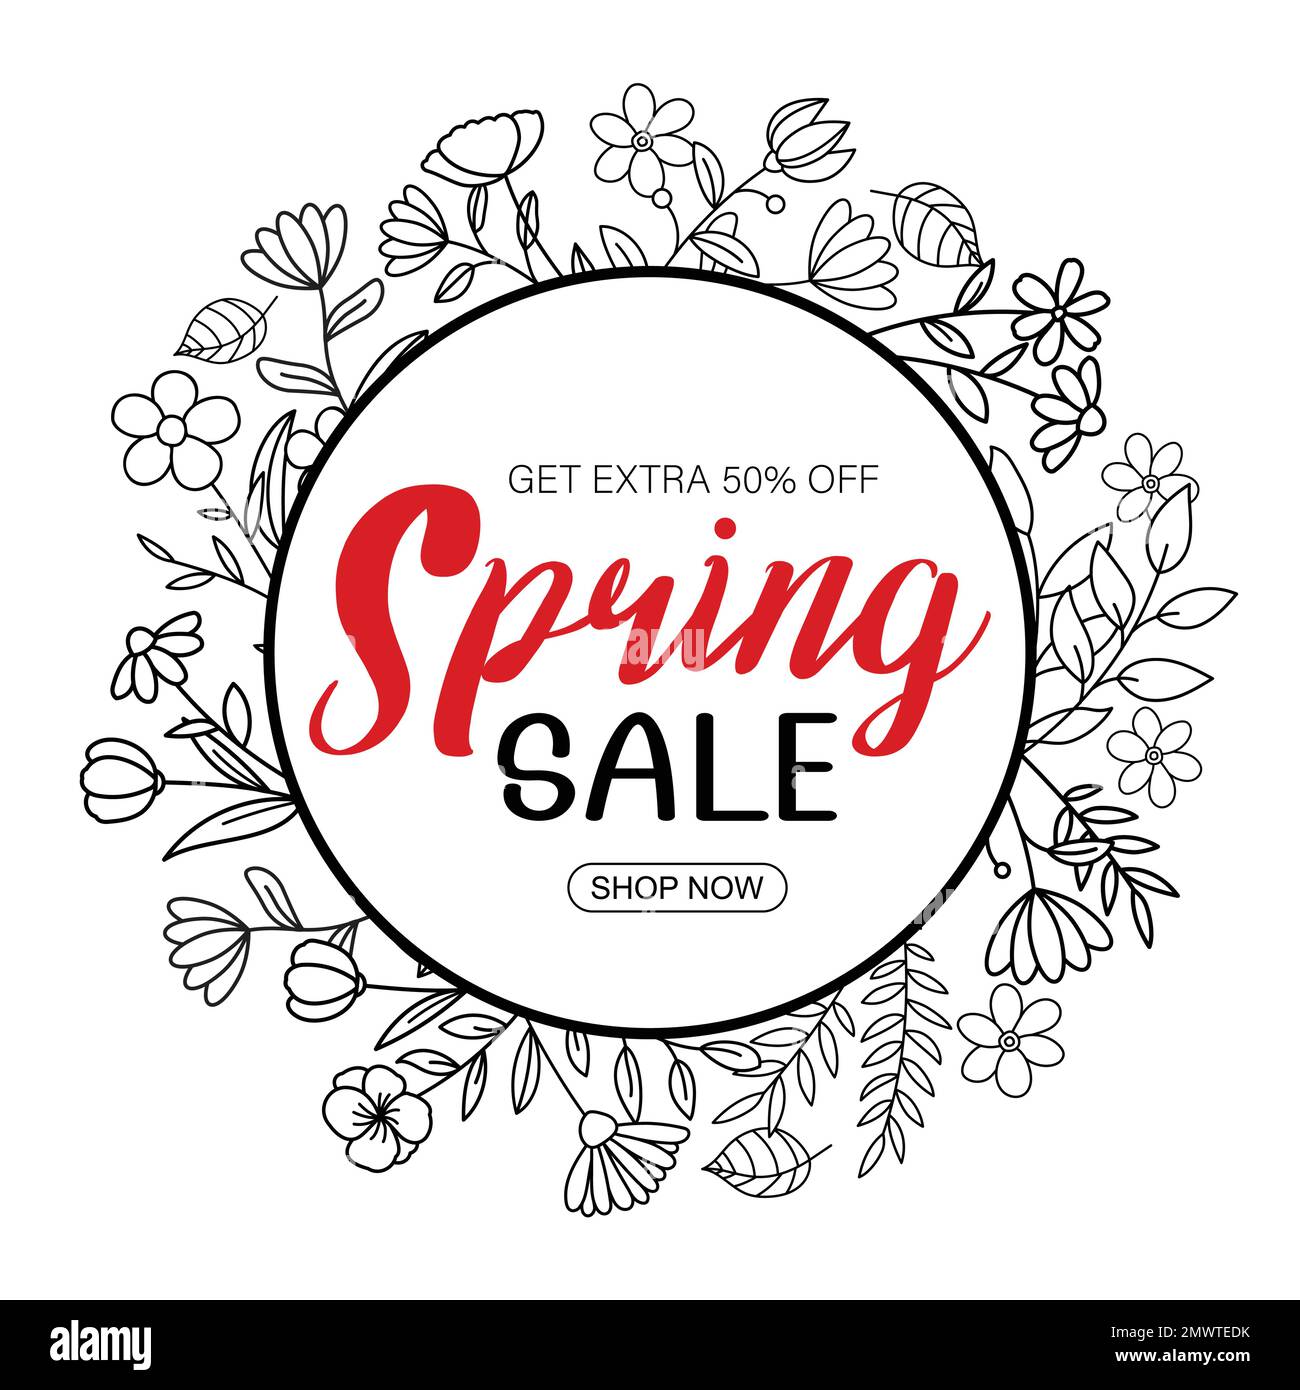 Frühjahrsbanner mit Blatt- und Blumenhandzeichnung auf weißem Hintergrund. Poster-Angebot bis zu 50 % Rabatt. Stock Vektor